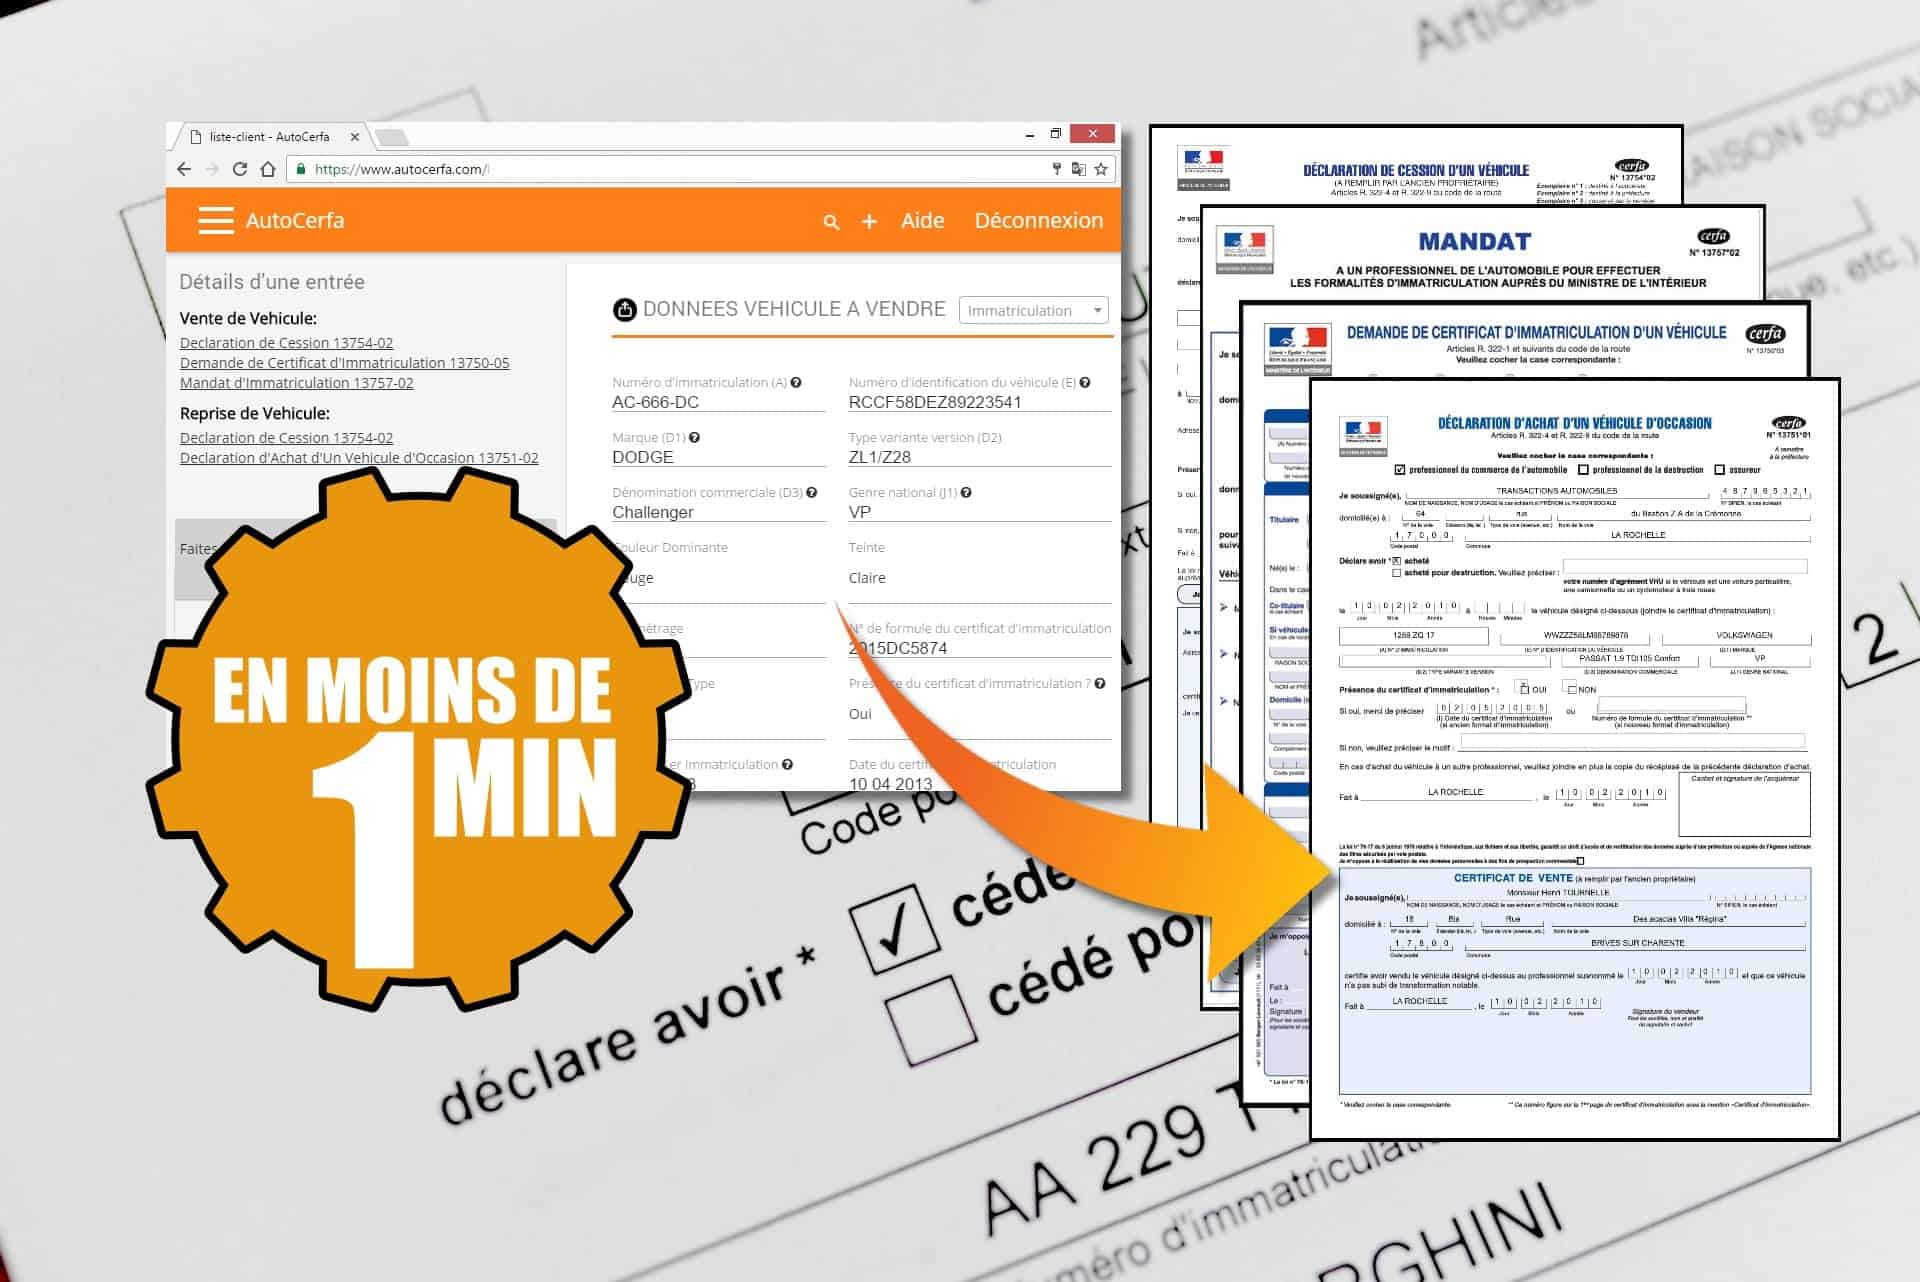 Remplissage automatique de formulaire cerfa pour concessionaire automobile en France. Un logiciel crée pour tous les concessionnaires d'automobiles.